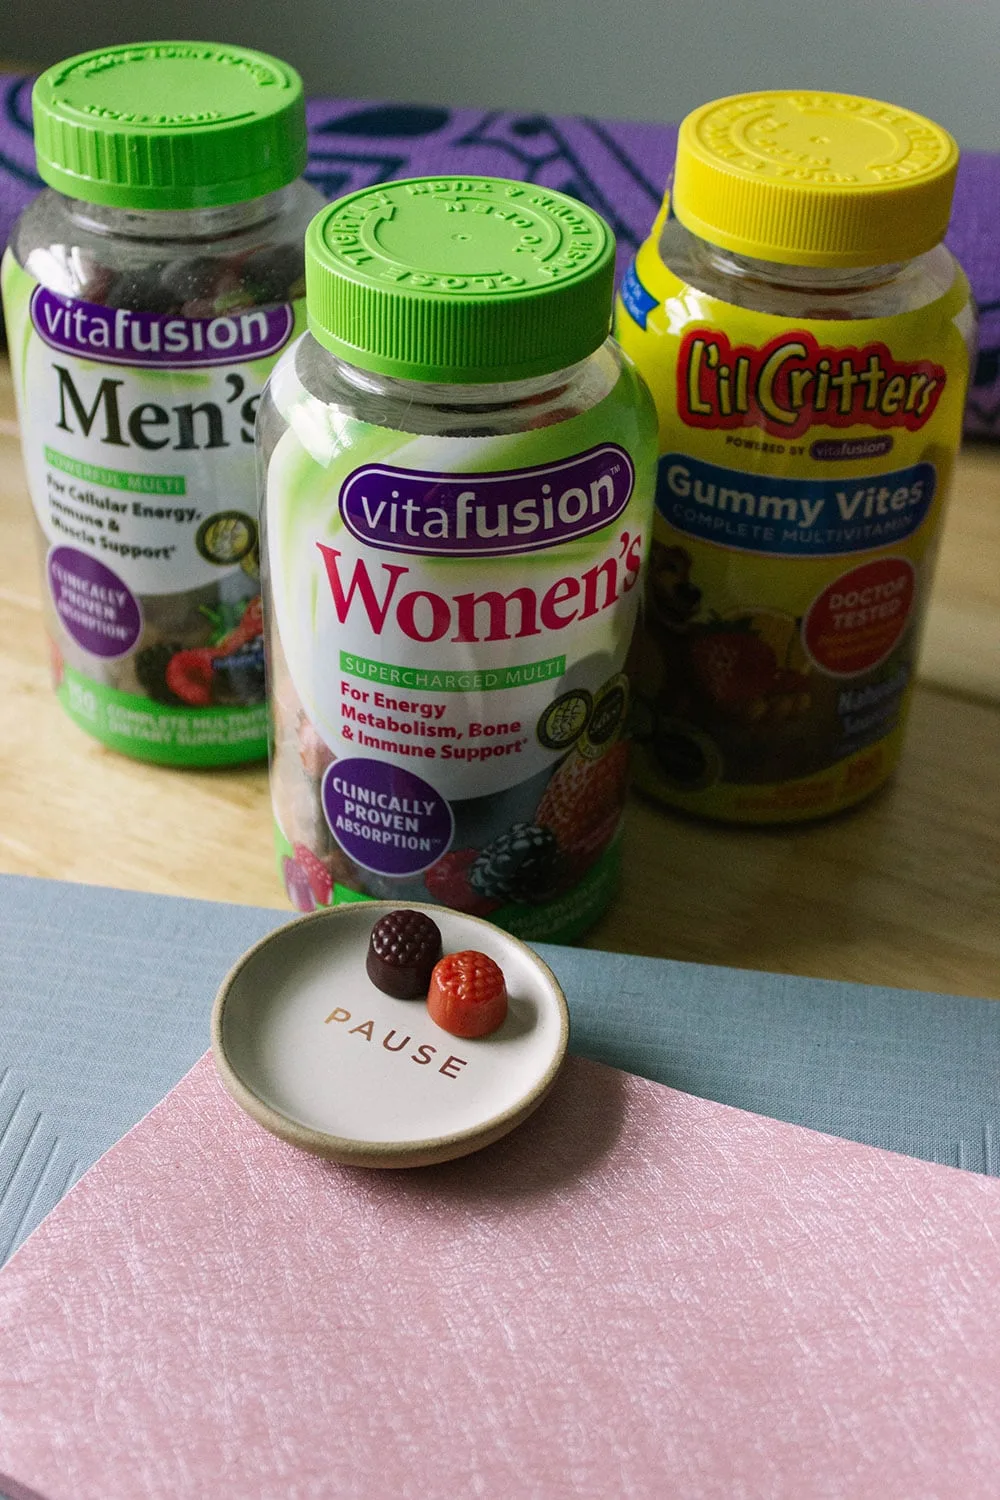 Vitafusion vitamins on a desk. 